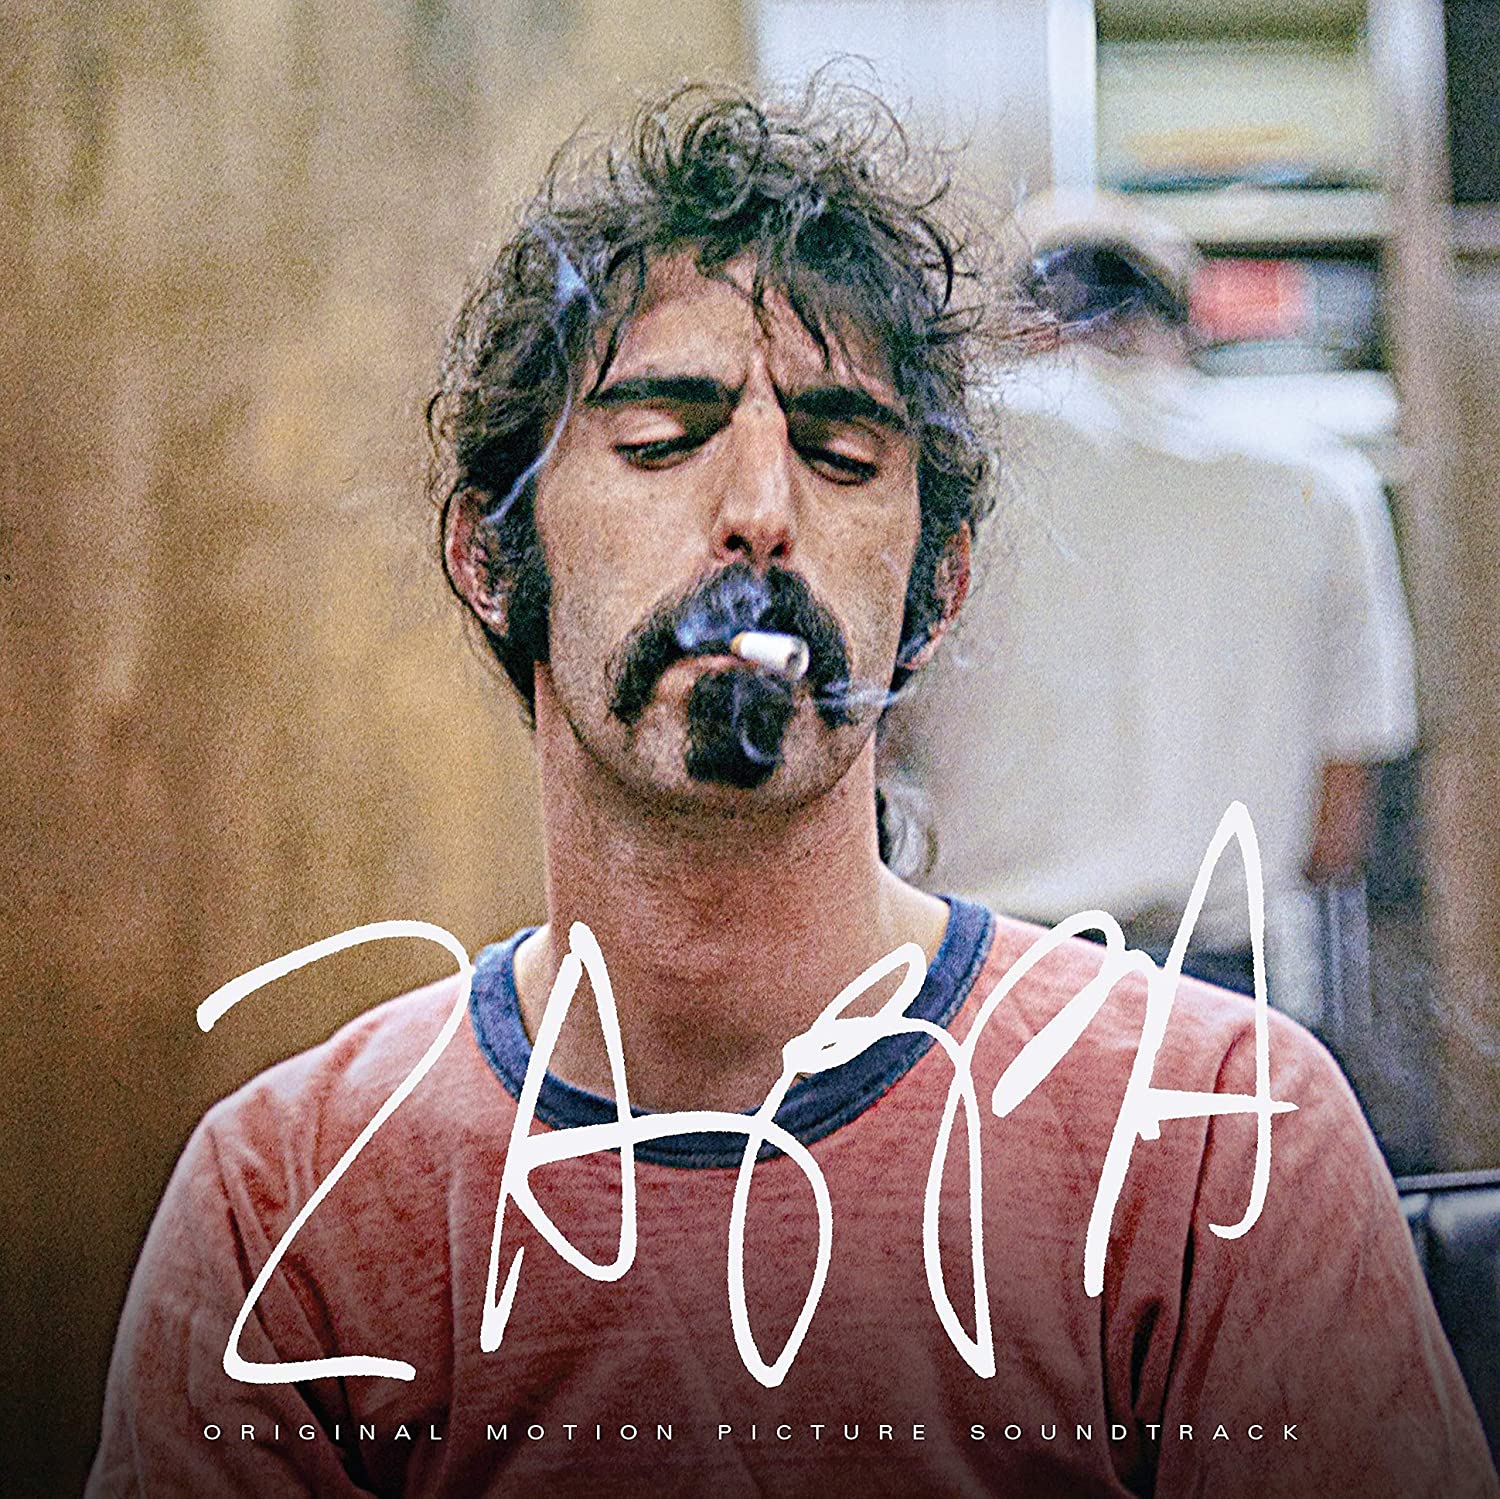 Zappa Original Motion Picture Soundtrack | Frank Zappa carturesti.ro poza noua